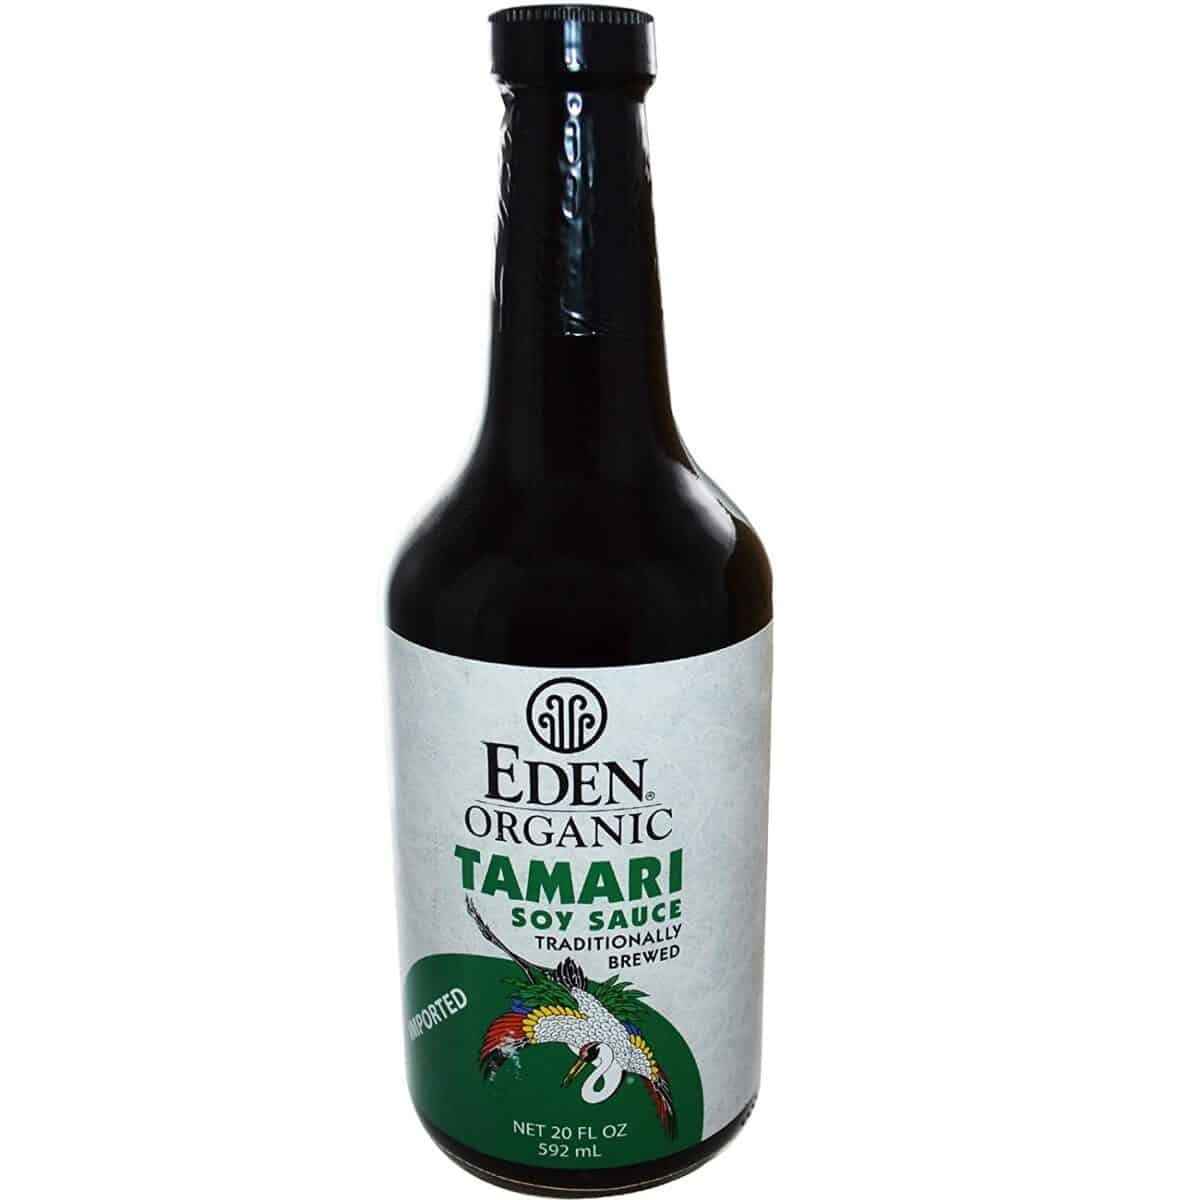 Bäst ekologiskt & bäst för att doppa sushi- Eden Foods tamarisås